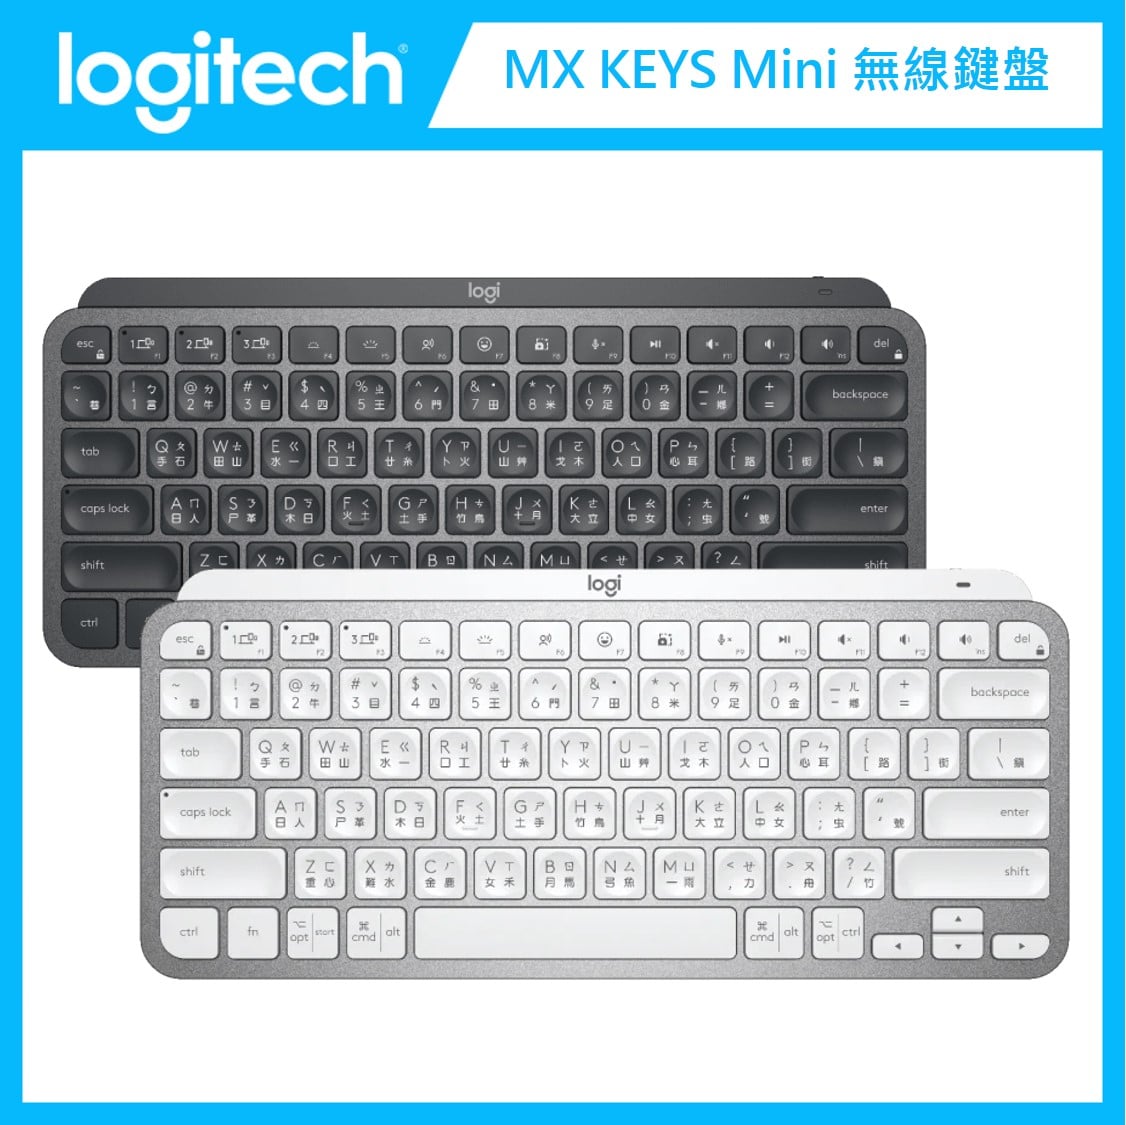 羅技Logitech MX KEYS Mini 無線鍵盤(兩色選) | 法雅客網路商店